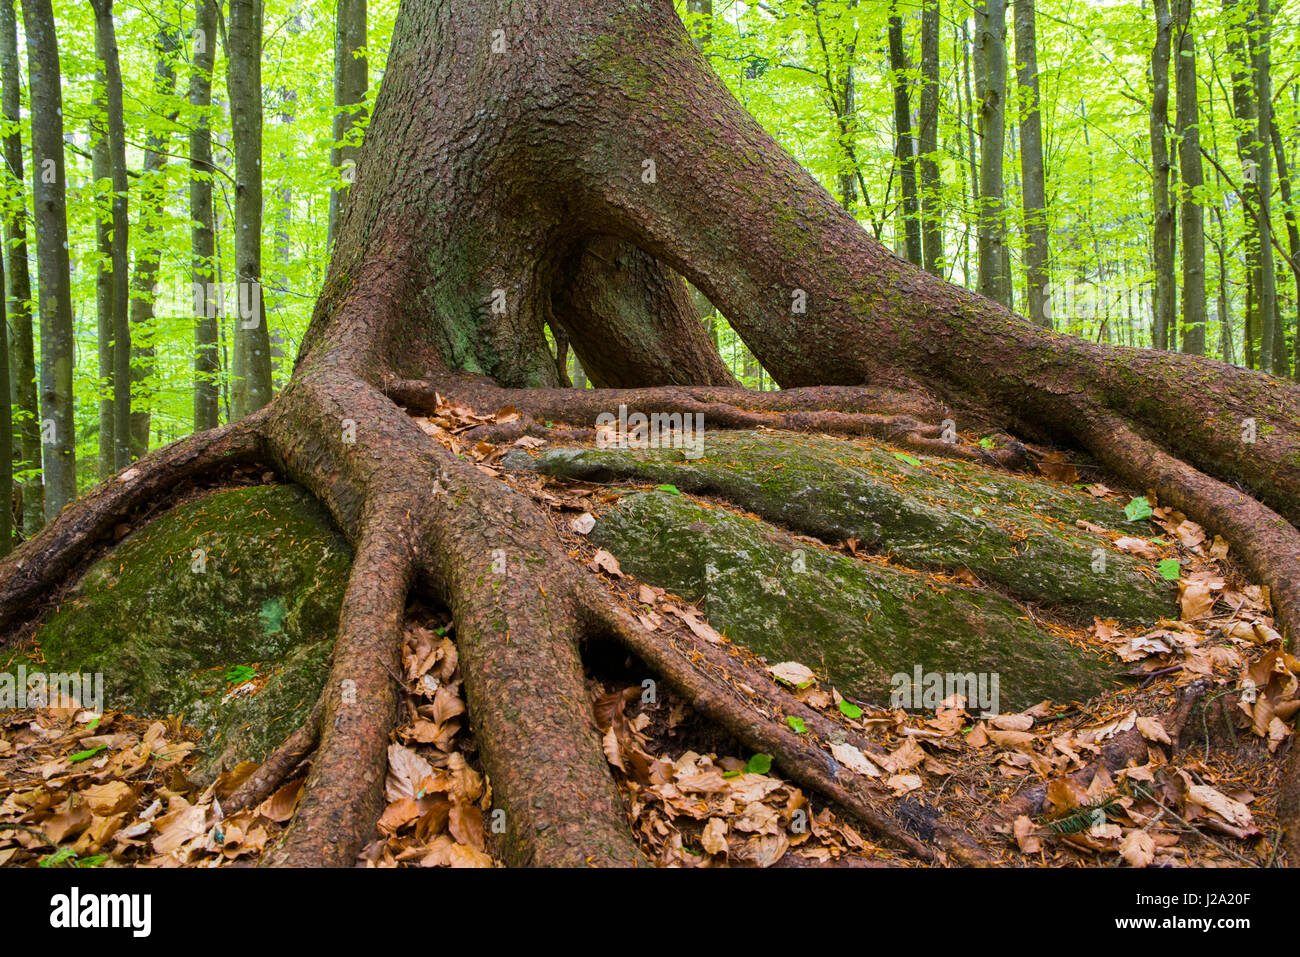 Urwald im Bayerischen Wald Nationalpark in Deutschland mit einer Sprucetree mit Stelzen Wurzeln Stockfoto